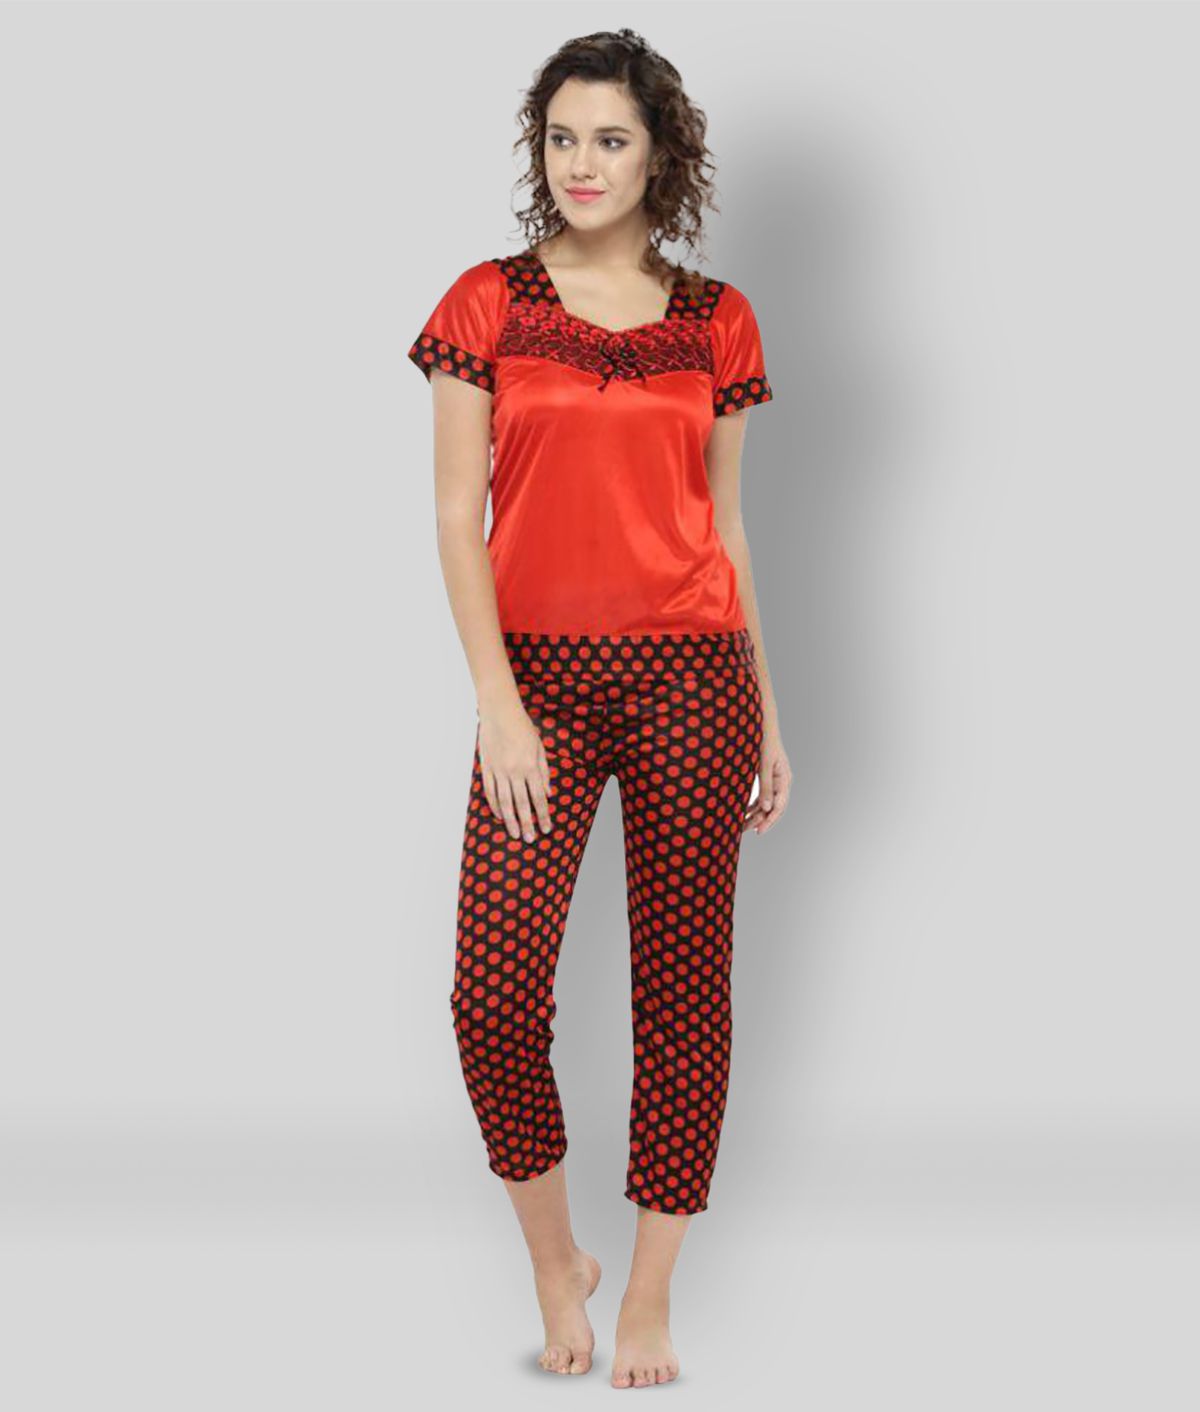     			N-Gal - Red Satin Women's Nightwear Nightsuit Sets ( Pack of 1 )